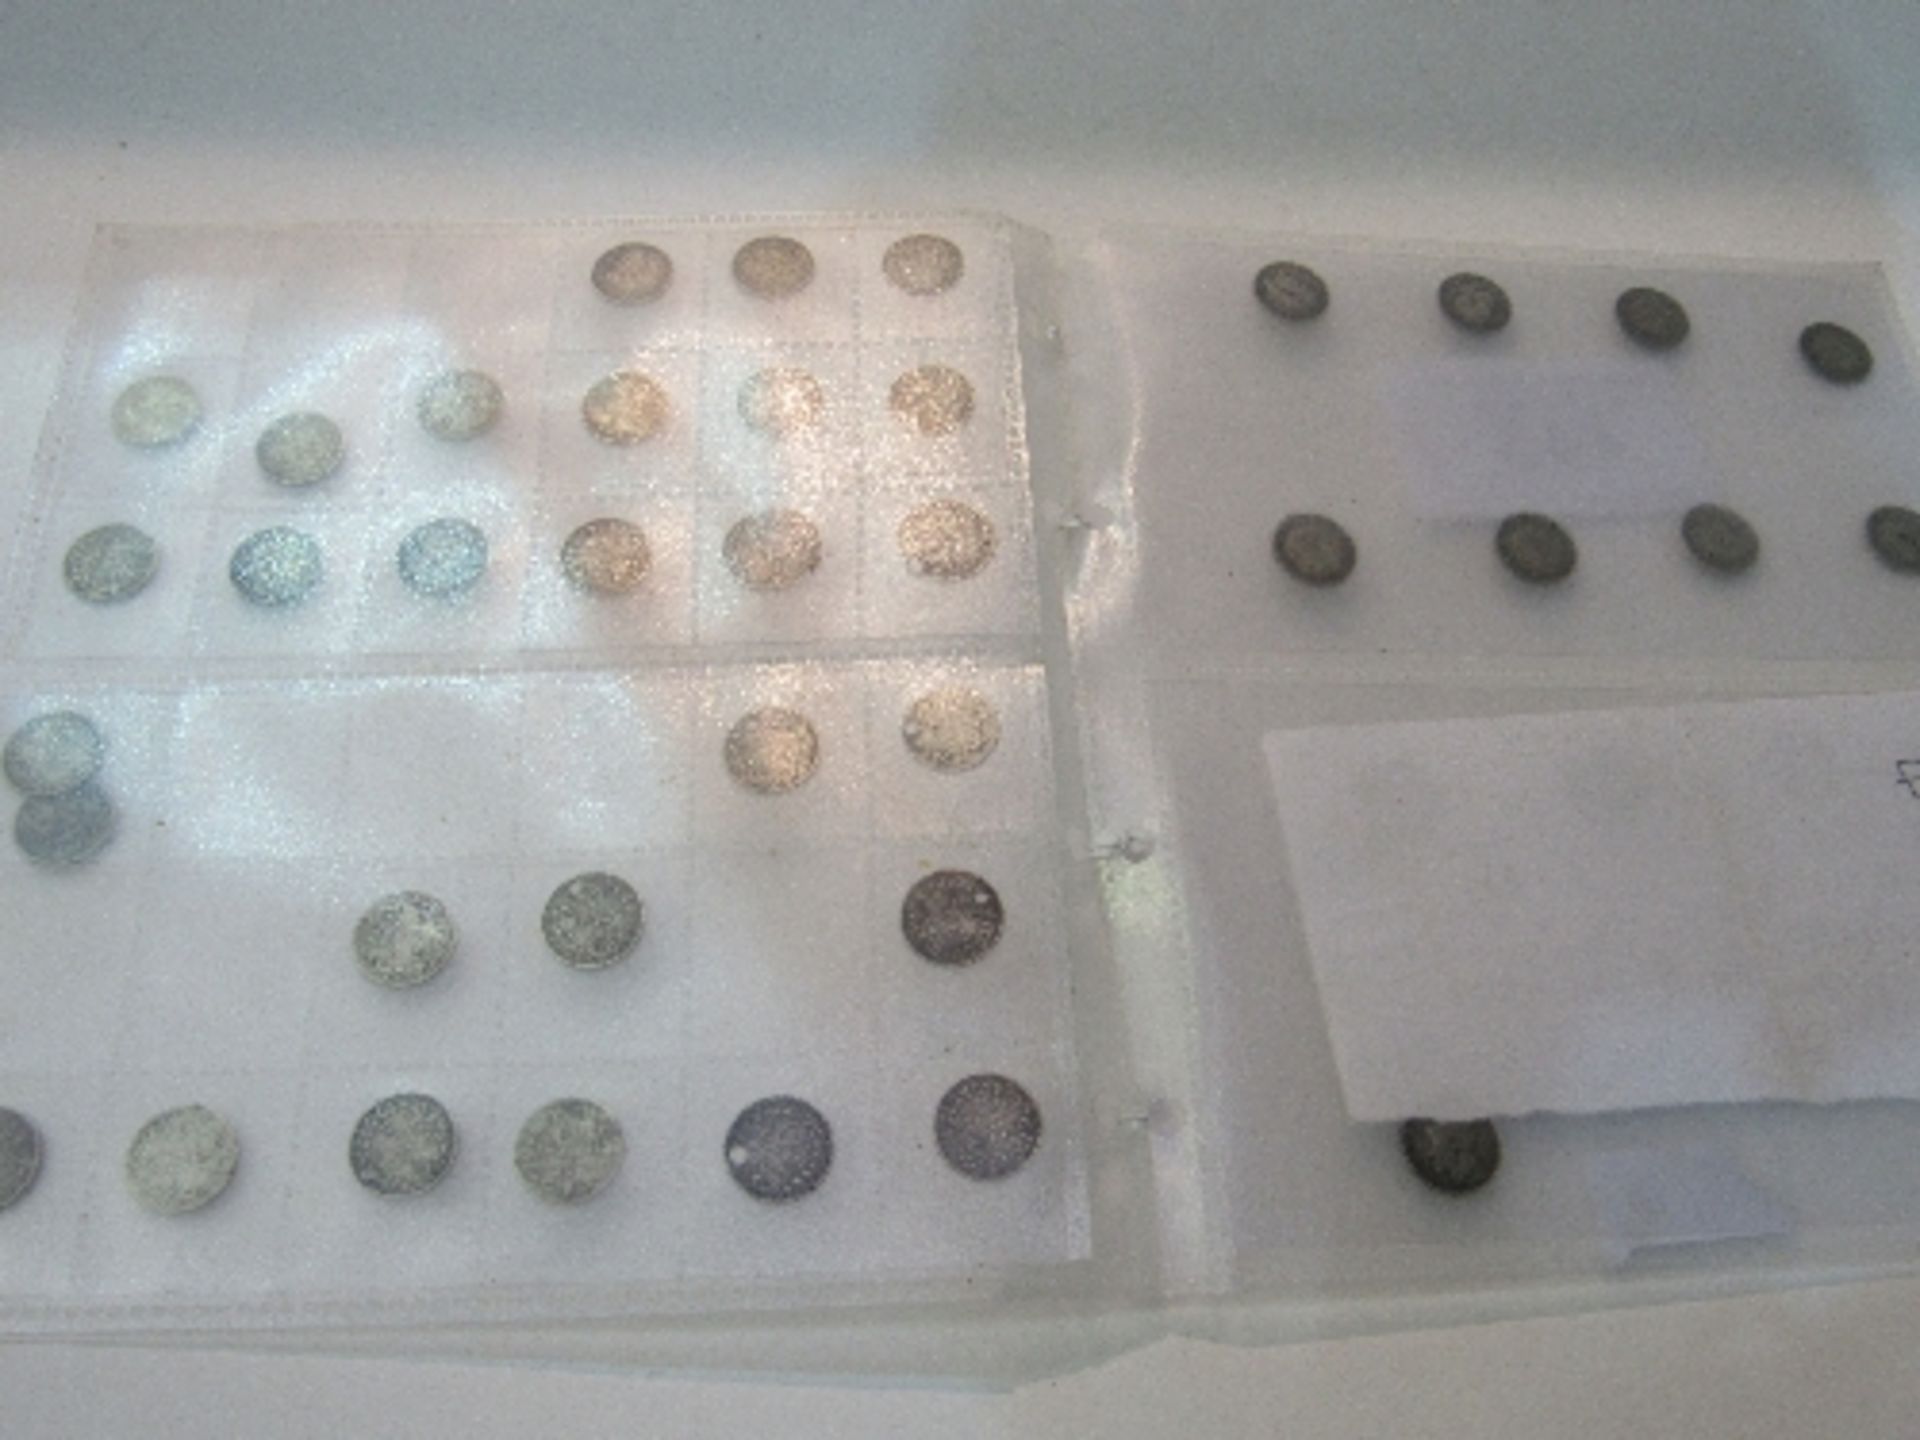 41 silver 3 penny bits (pre 1930). Estimate £30-40 - Image 2 of 2